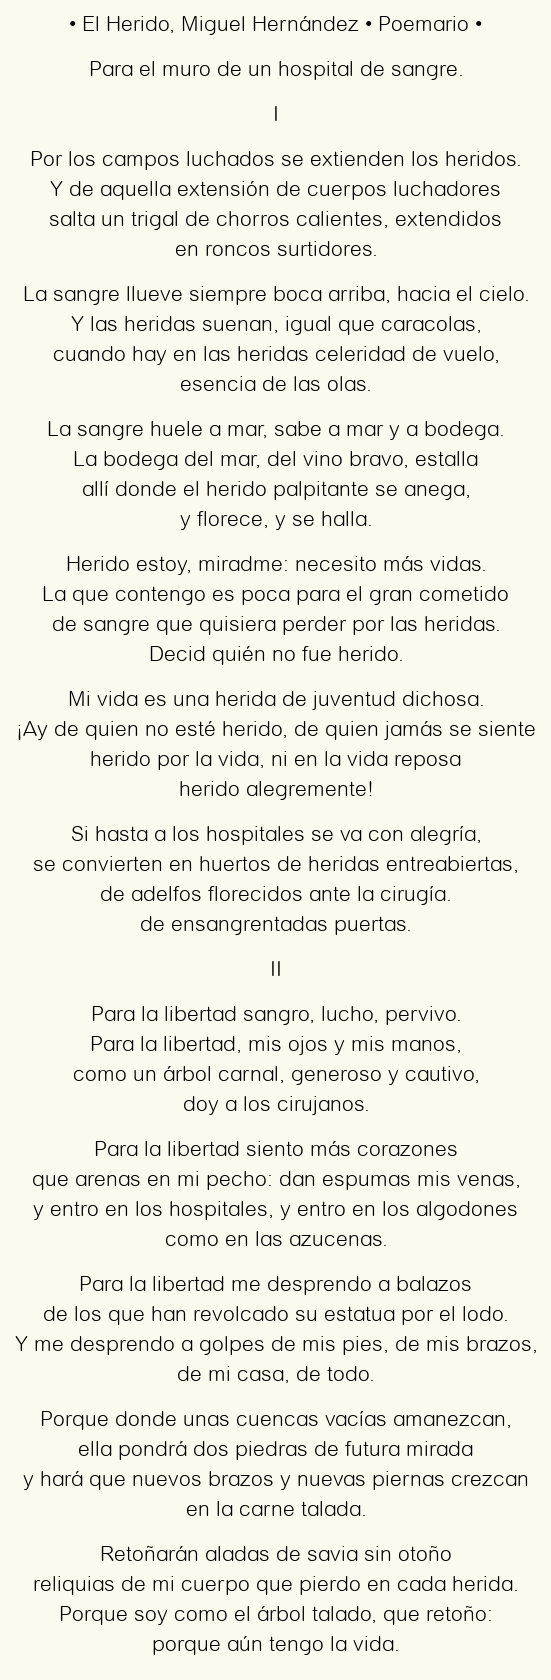 Imagen con el poema El Herido, por Miguel Hernández